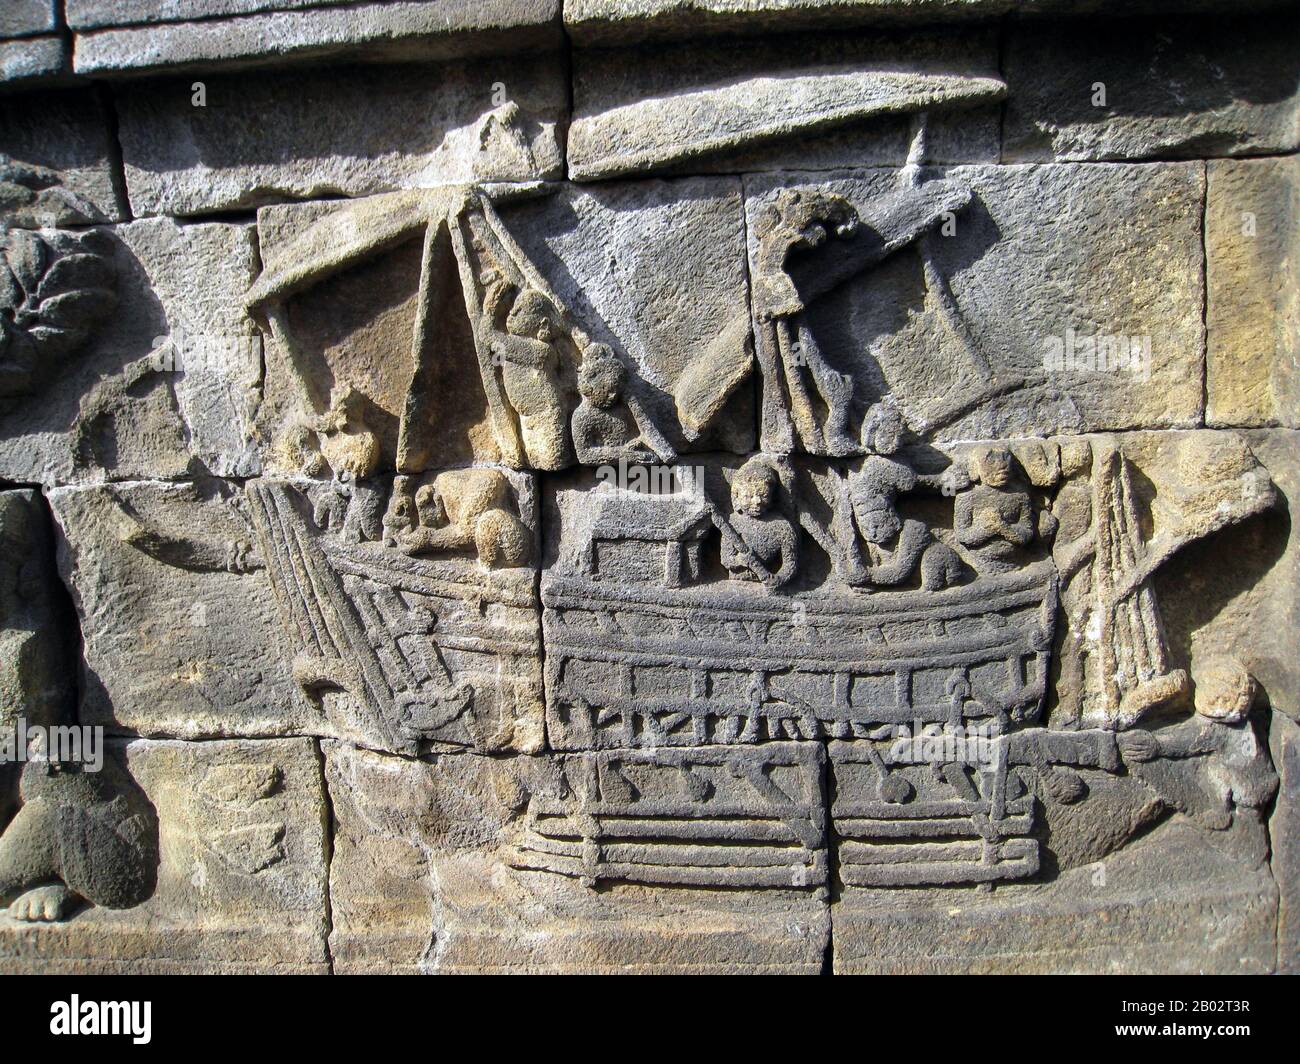 Ein Schiff aus Borobudur ist das Doppelschiff aus Holz aus dem 8. Jahrhundert, das in einigen Basreliefen des buddhistischen Borobudur Denkmals in Zentraljava, Indonesien, abgebildet ist. Die in Borobudur abgebildeten Schiffe waren höchstwahrscheinlich der Typ von Schiffen, die für inter-insuläre Handelsgeschäfte und Marinekampagnen des Thalassokratie Imperiums von Sailendran und Srivijayan eingesetzt wurden, das die Region um den 7. Bis 13. Jahrhundert beherrschte. Die Funktion des Auslegers bestand darin, das Schiff zu stabilisieren; ein einzelnes oder doppeltes Auslegerkanu ist das typische Merkmal der seemännischen Schiffe. Sie gilt als B. Stockfoto